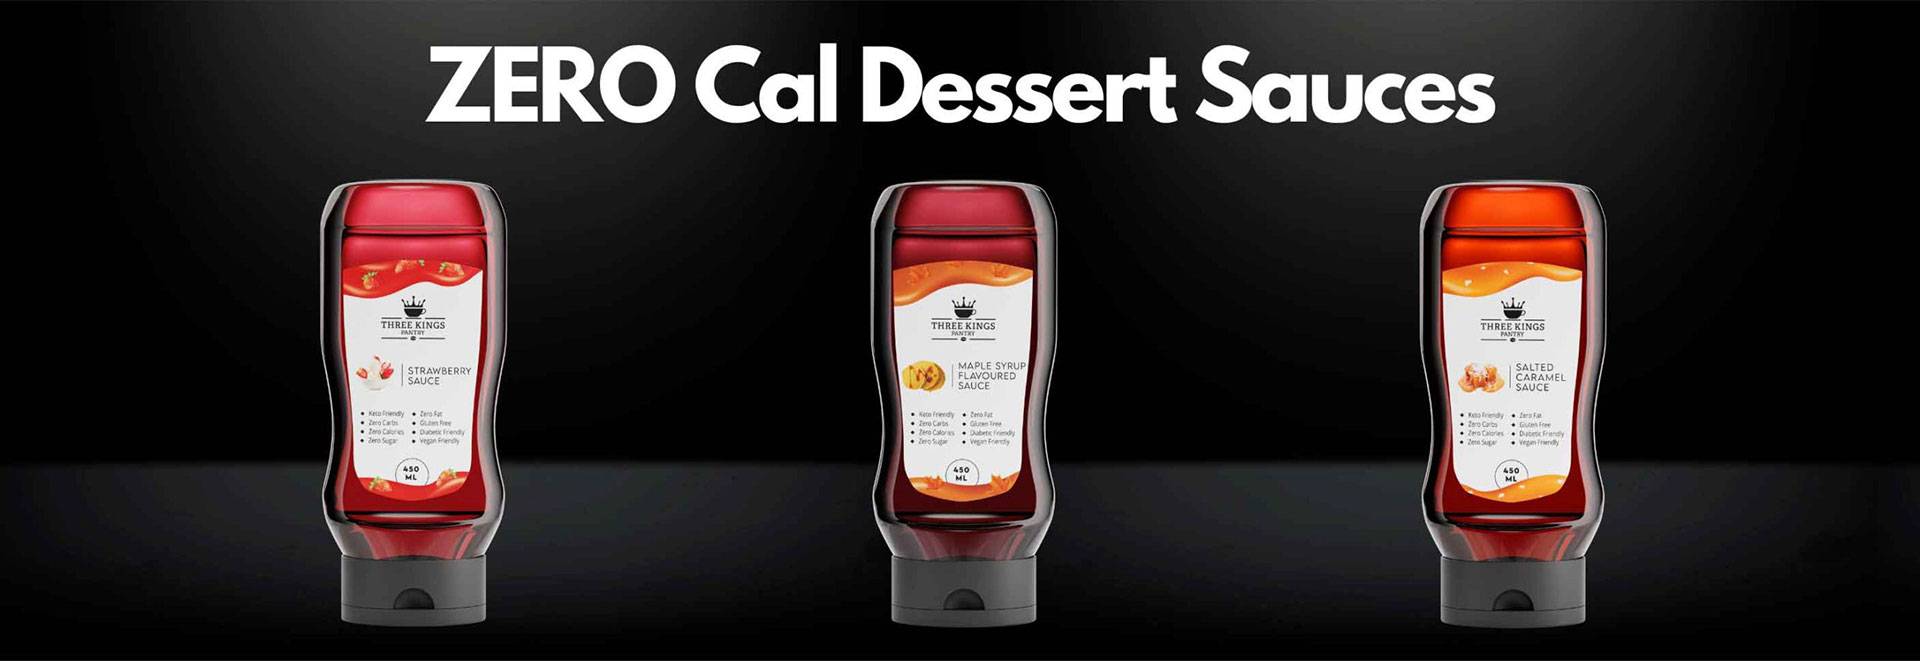 zero calorie dessert sauces